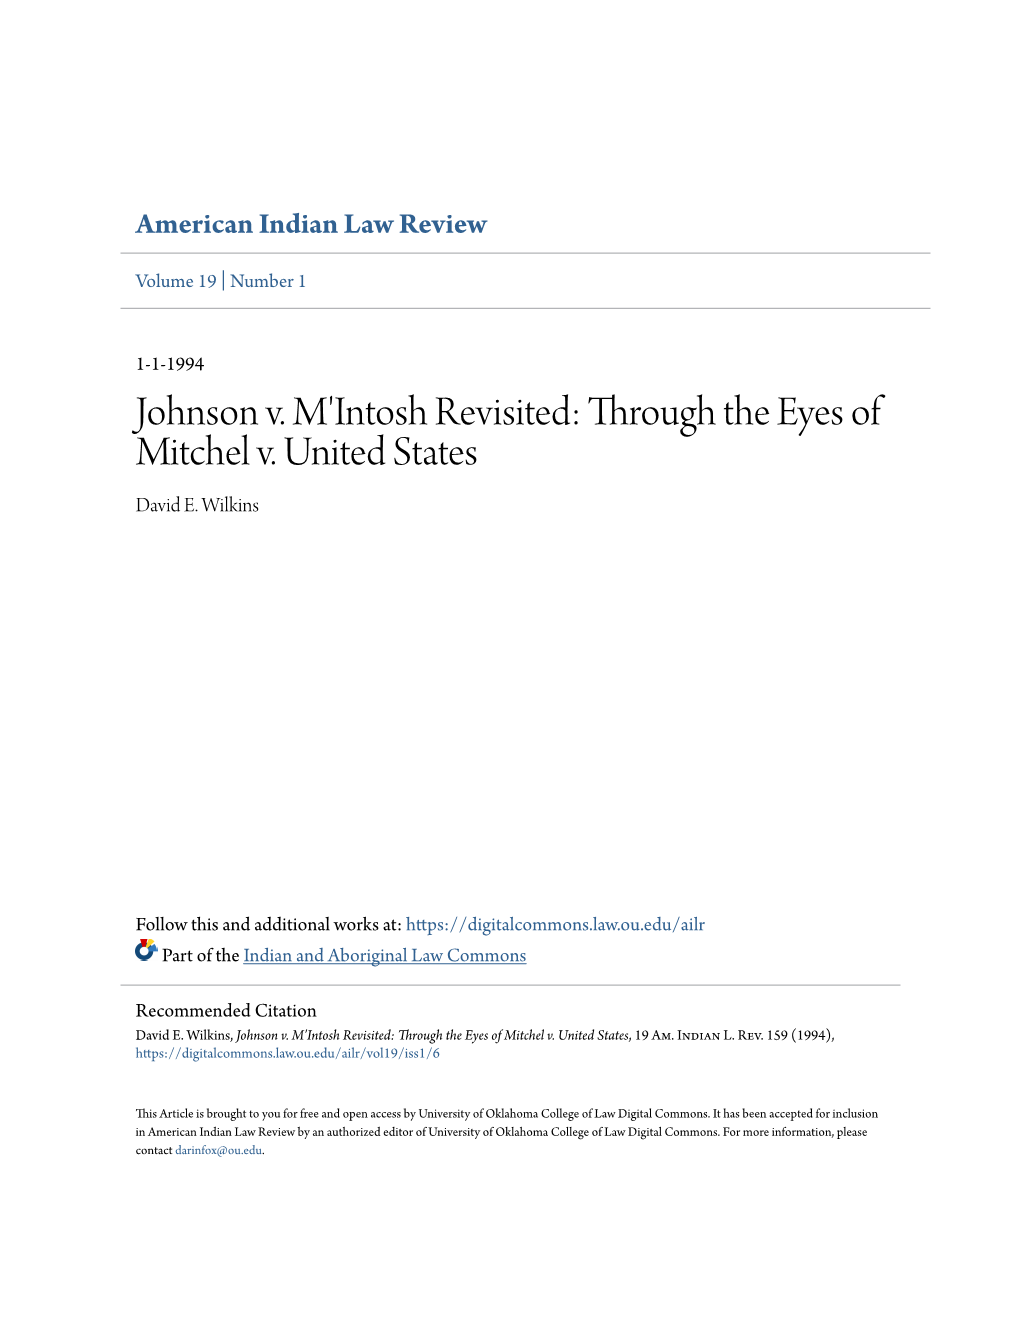 Johnson V. M'intosh Revisited: Through the Eyes of Mitchel V